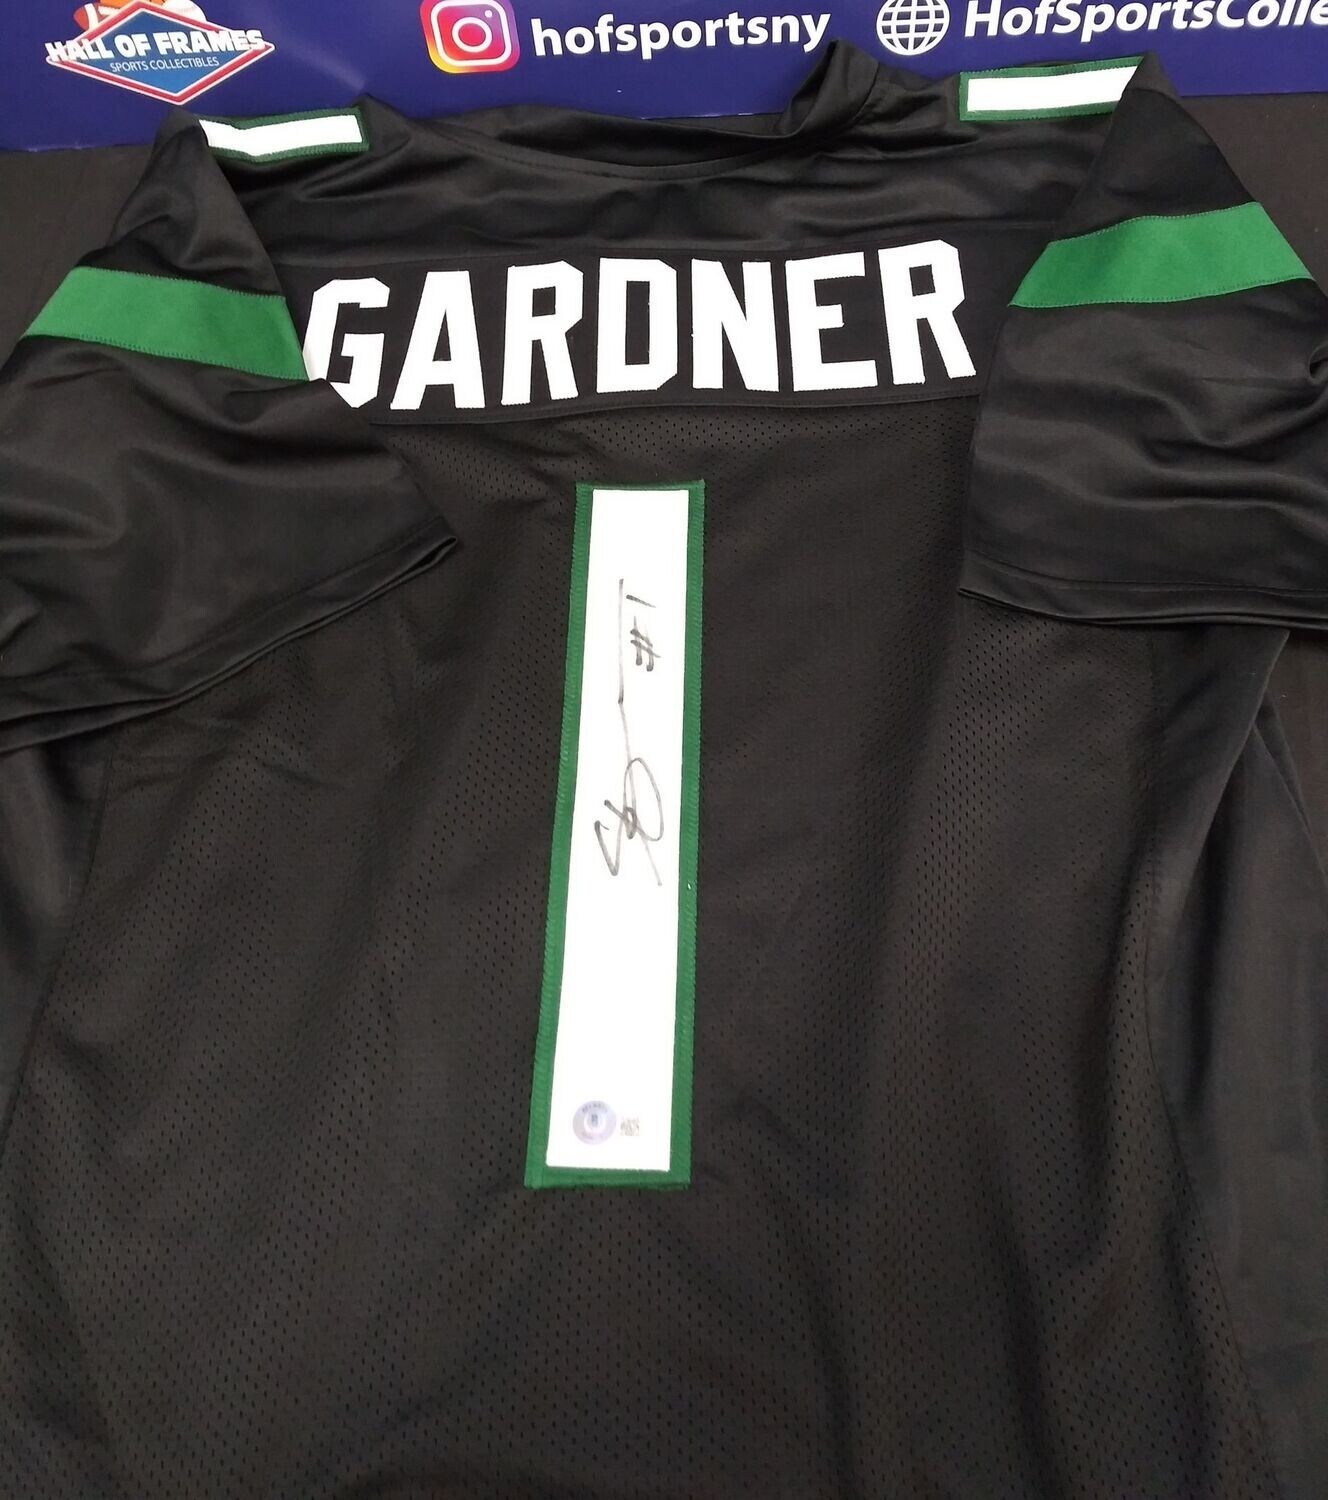 sauce gardner jersey signed